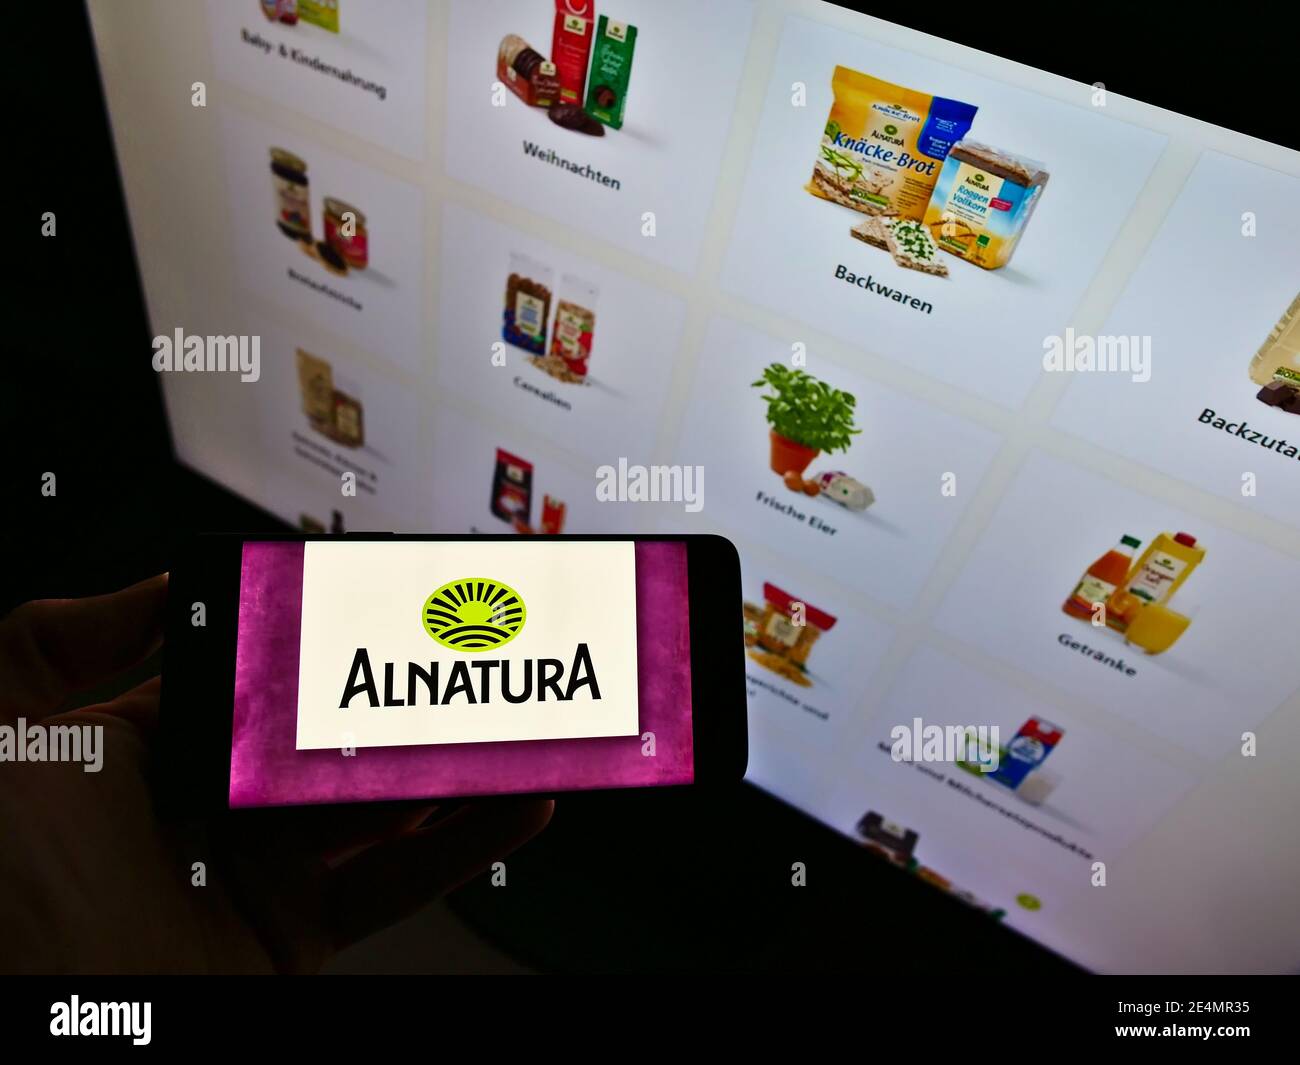 Persona que sostiene el smartphone con el logotipo de la cadena alemana de supermercados de alimentos orgánicos Alnatura Produktions- und Handels GmbH en la pantalla. Enfoque en la pantalla del teléfono. Foto de stock